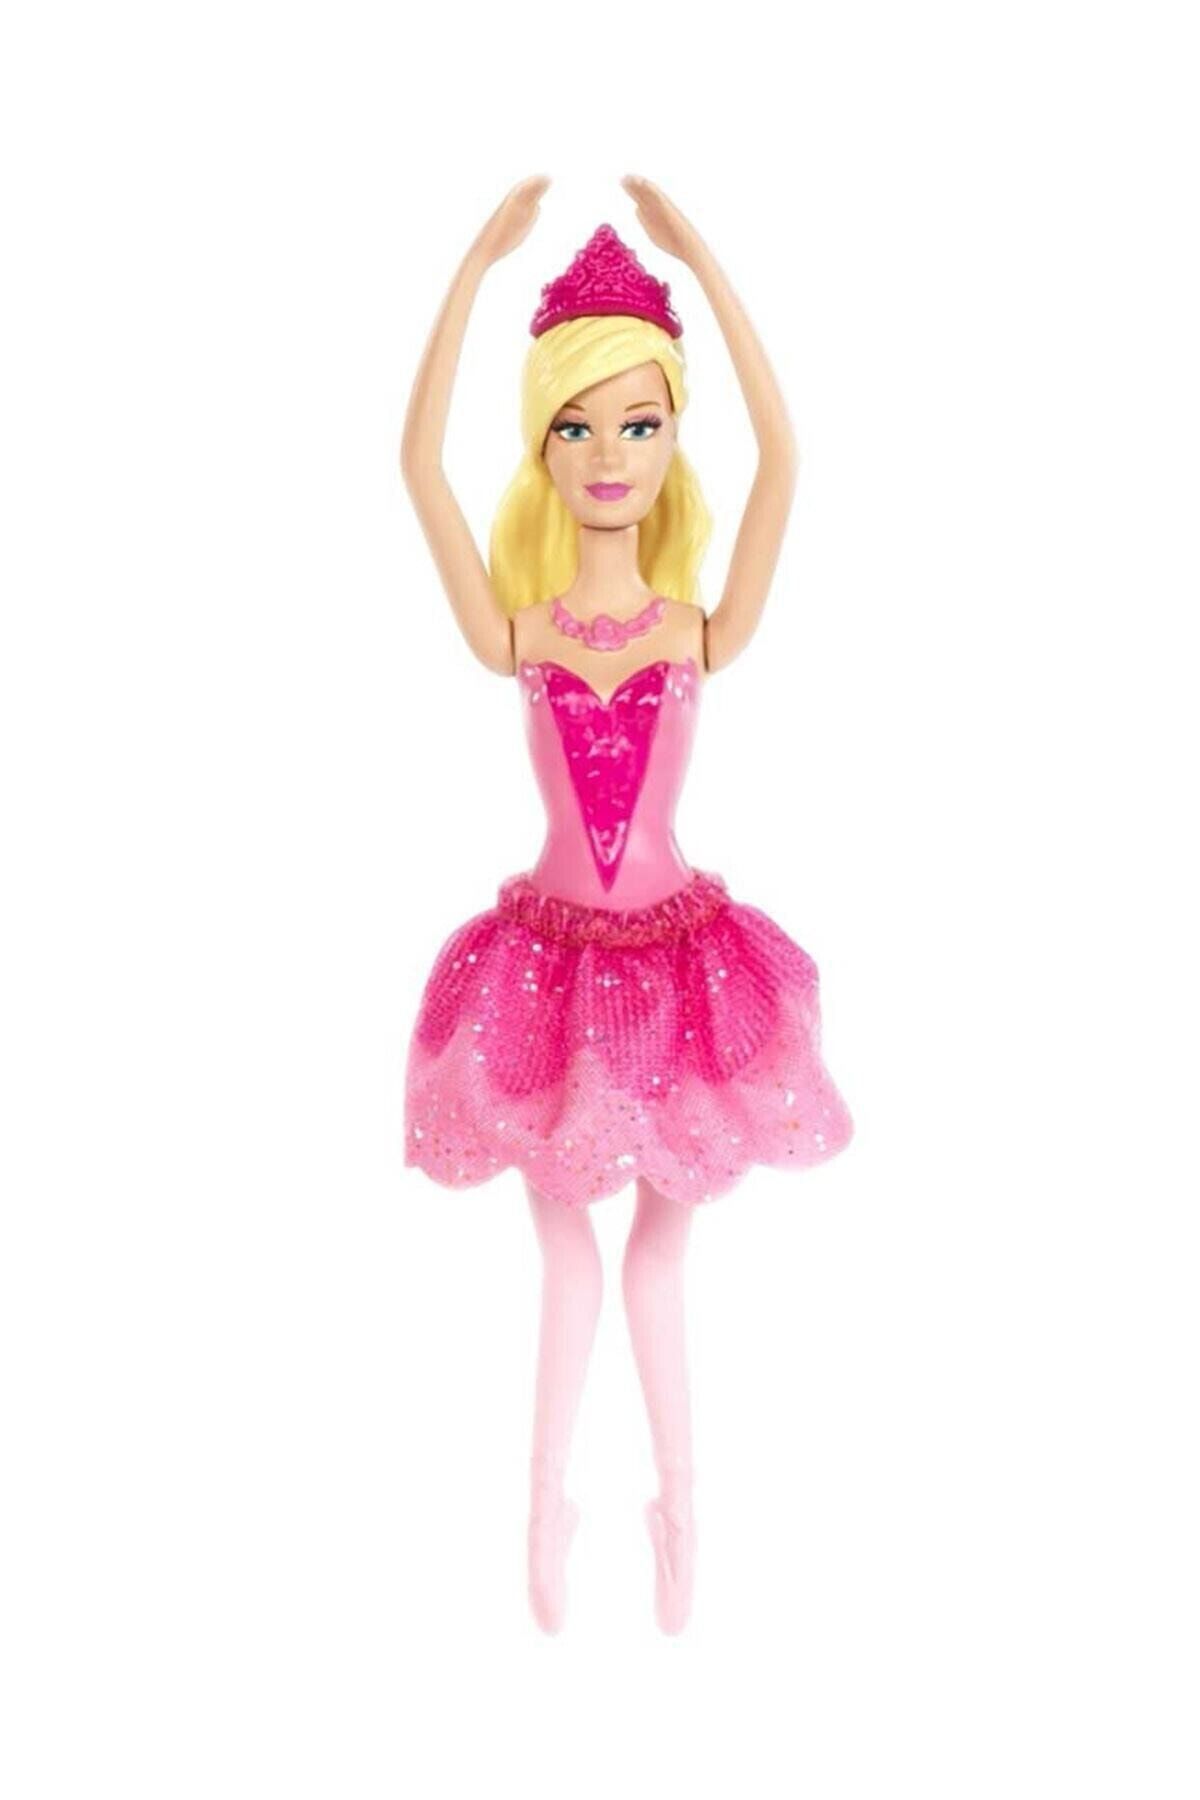 Мини куклы барби. Кукла балерина Mattel Barbie. Куклы Барби мини Маттель. Мини кукла Барби балерина Матель. Кукла Barbie балерины dhm42.